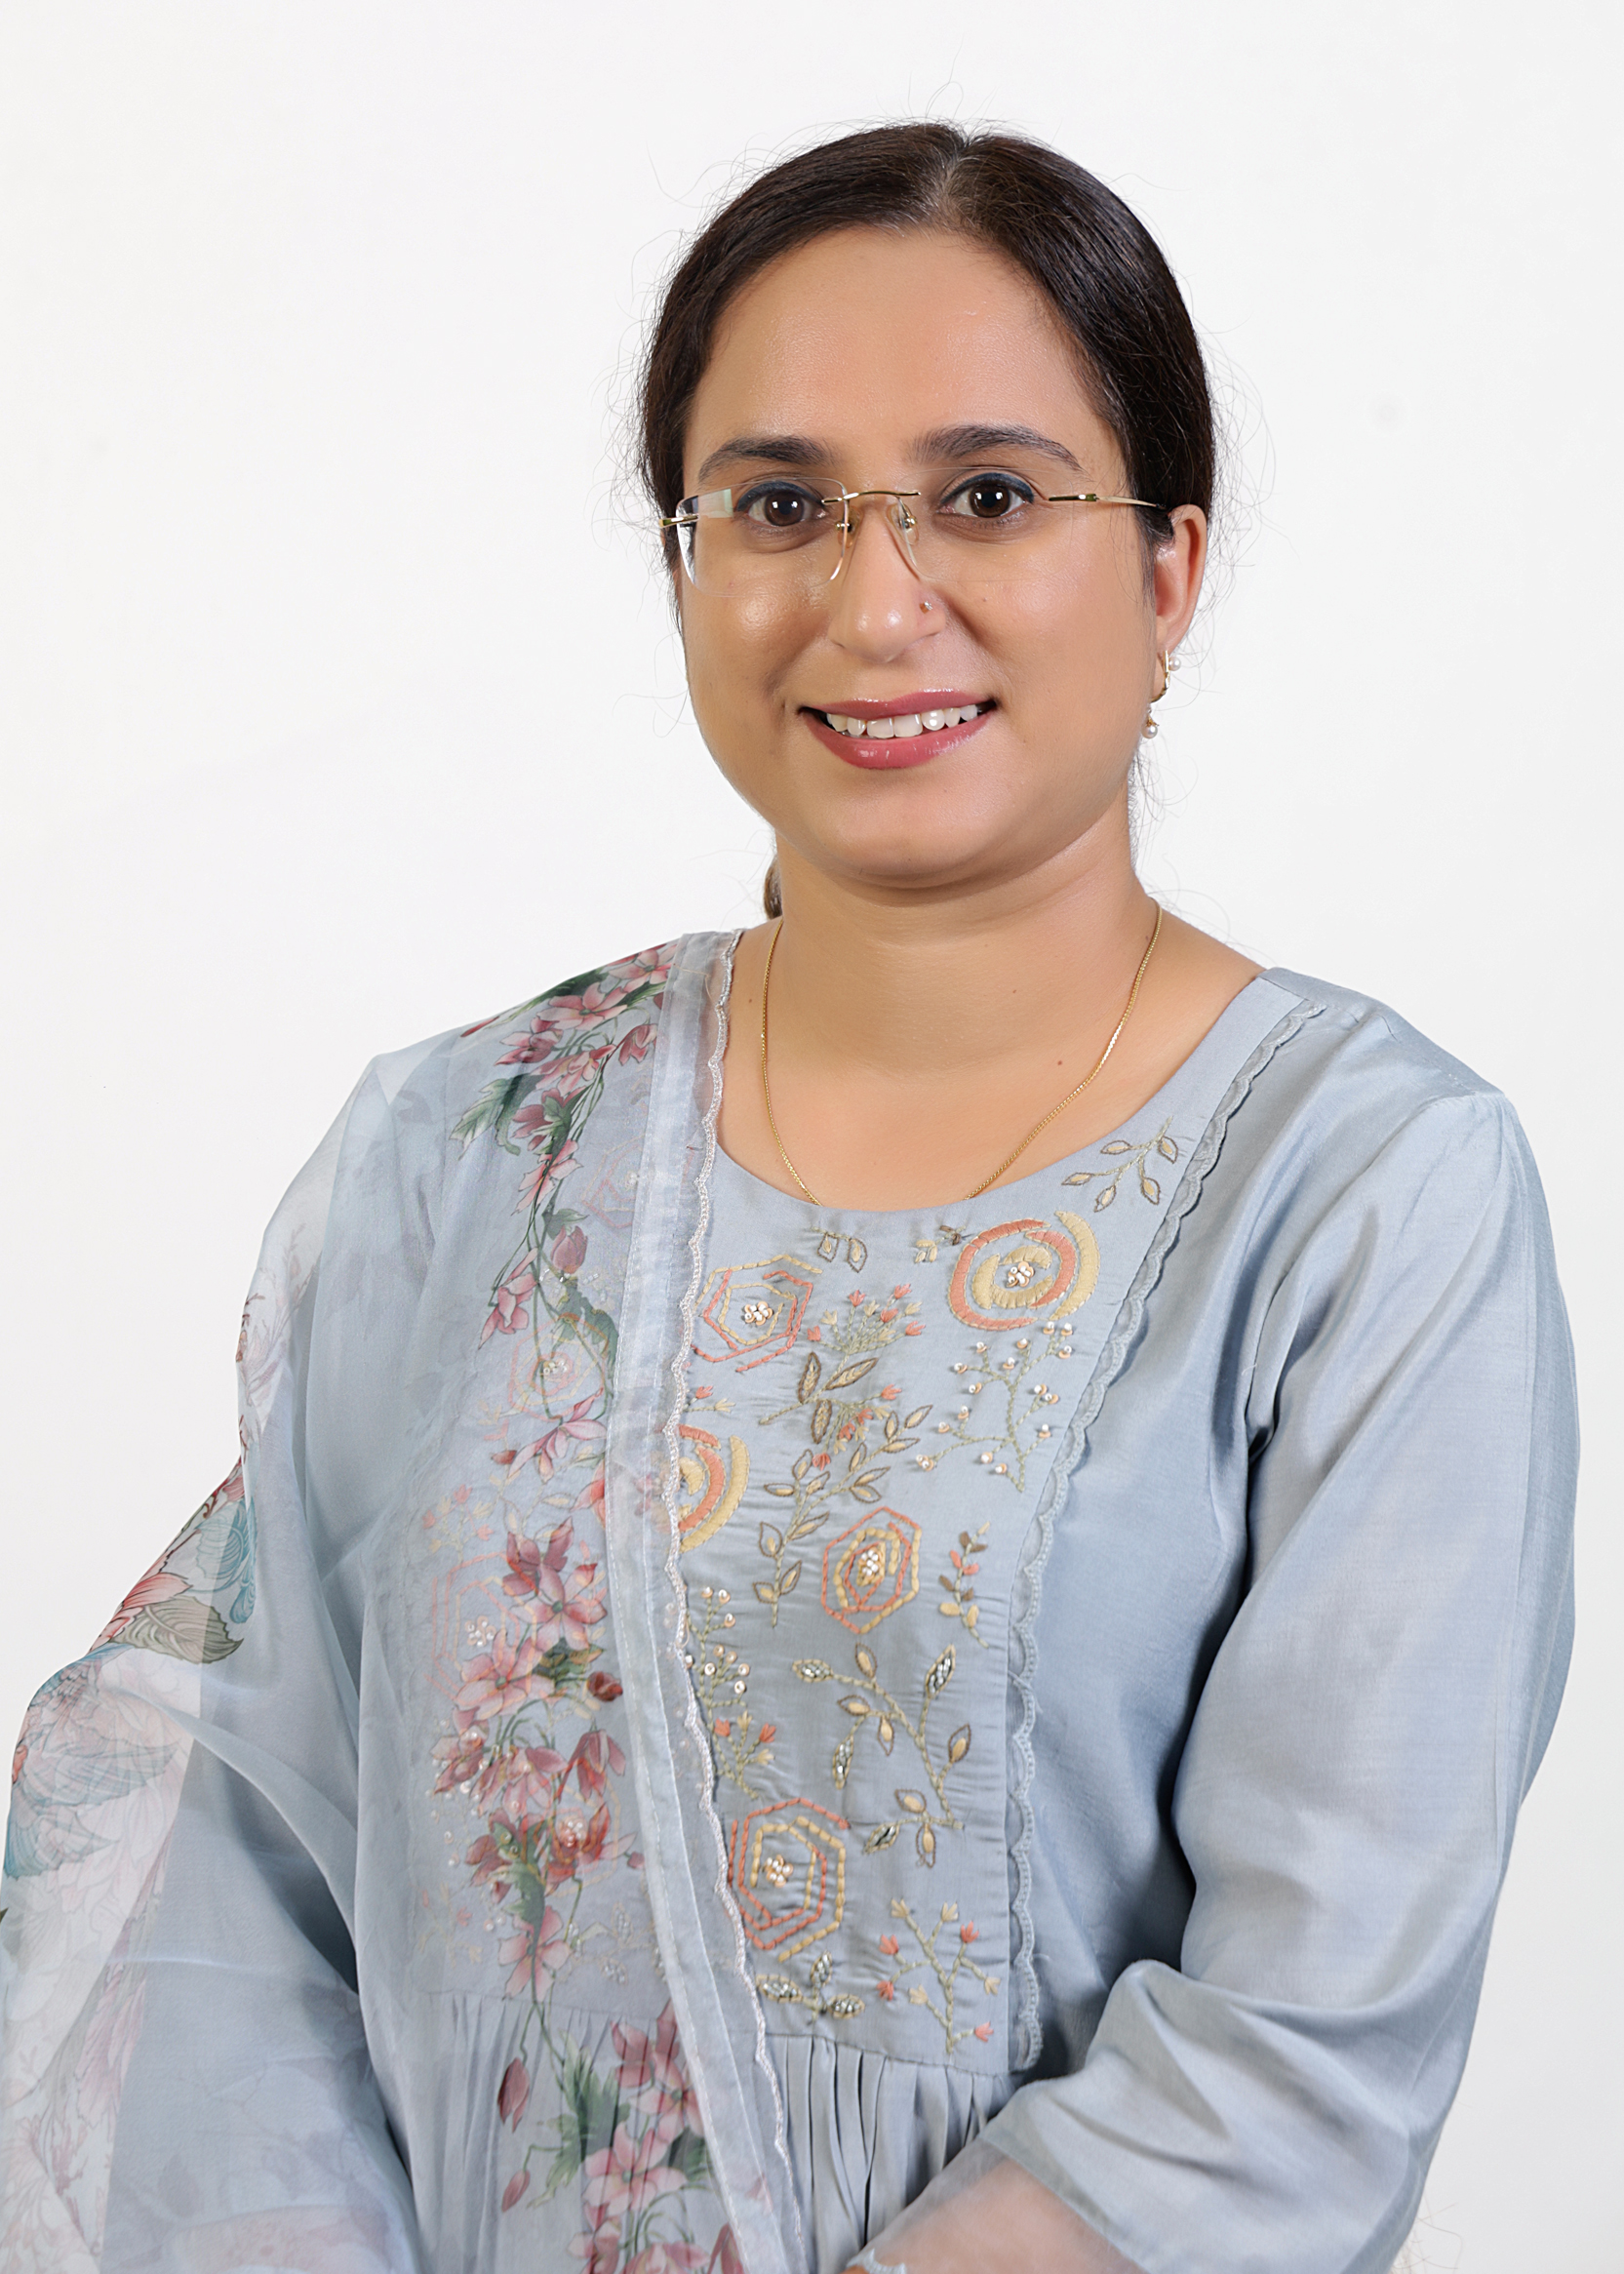 Dr. Sukhandeep Kaur